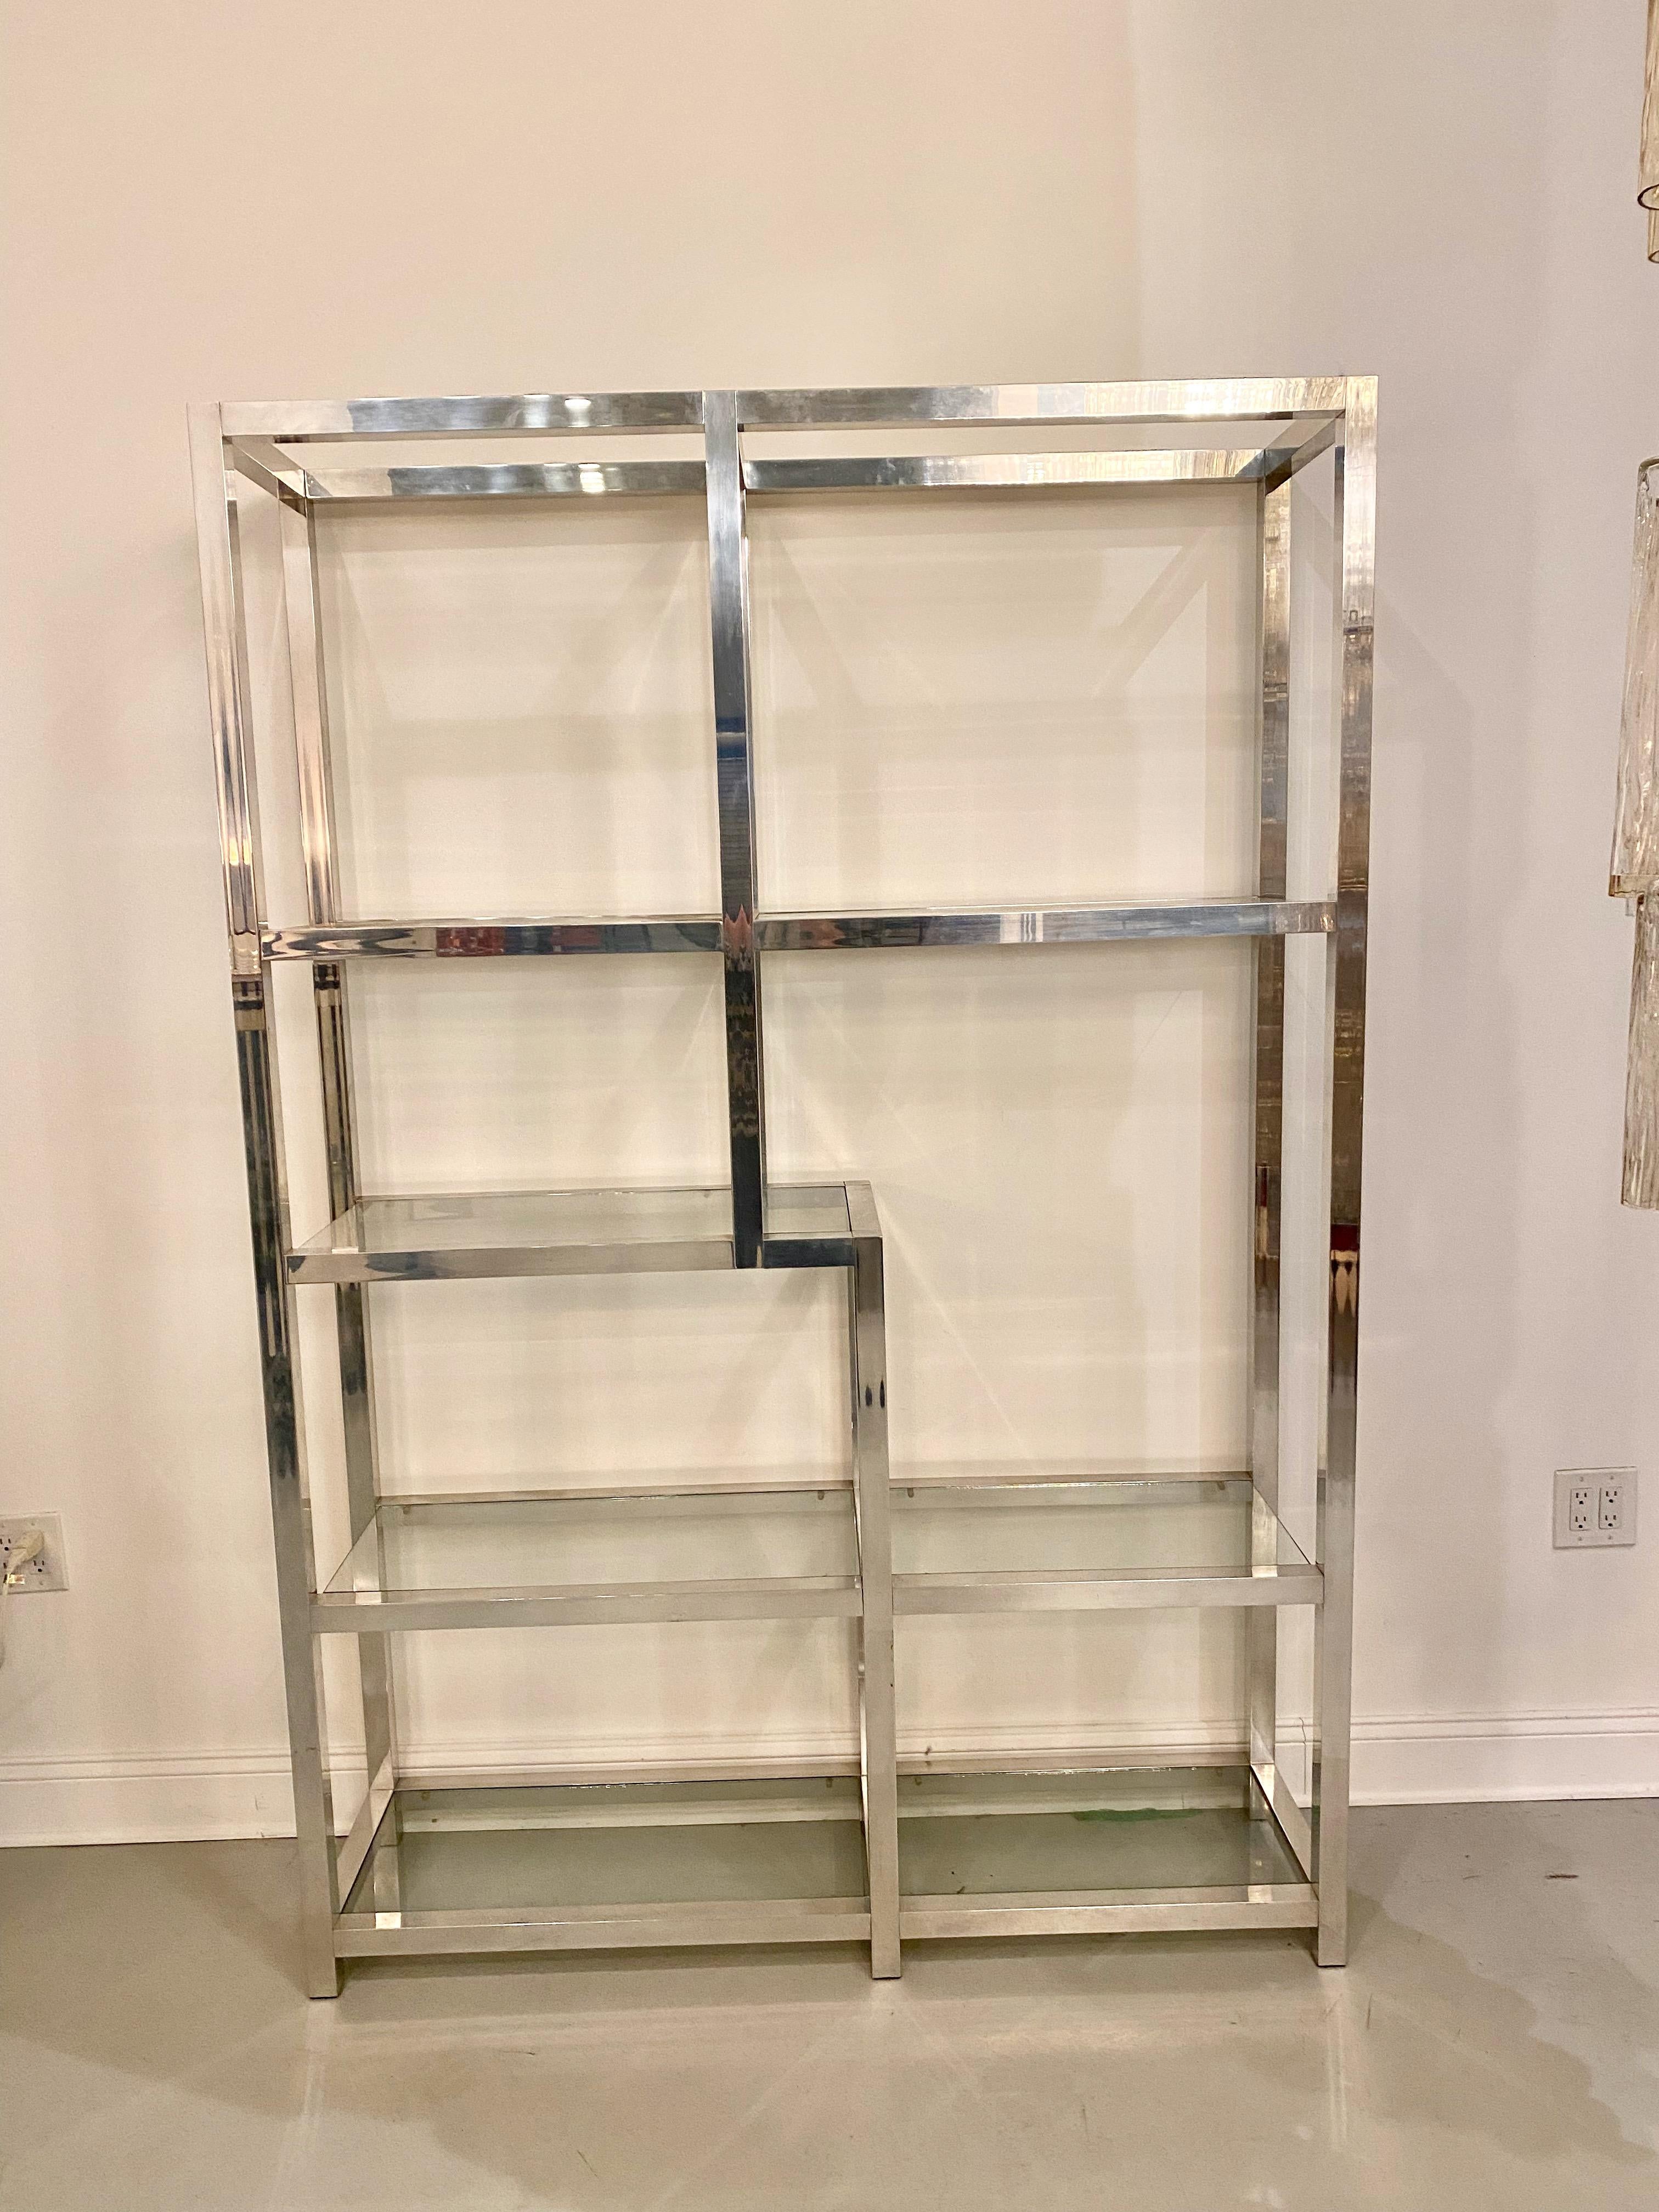 Mid Century Modern display case. Chrome frame holding seven glass shelfs.